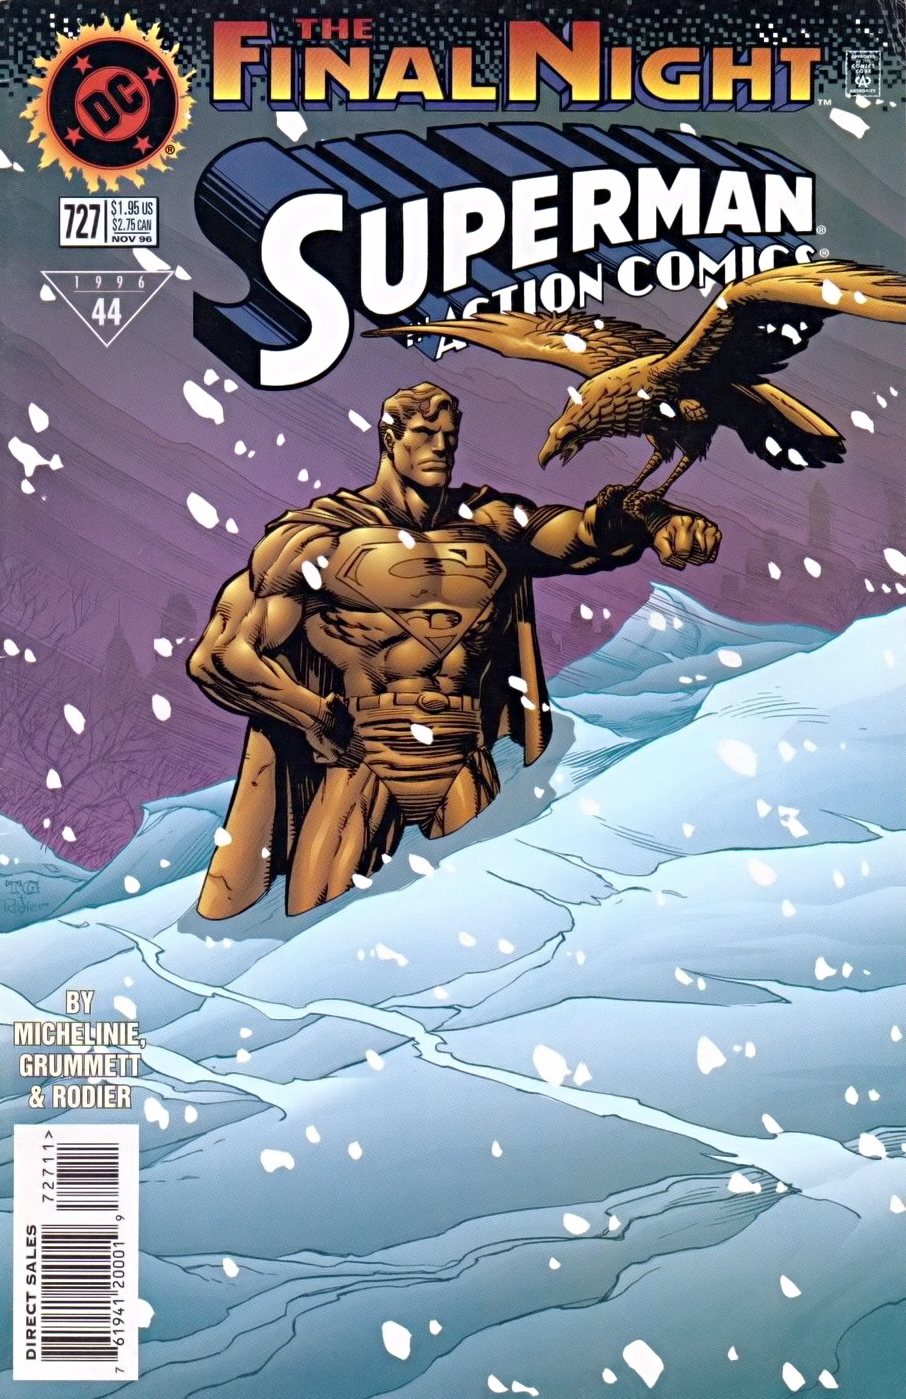 Action Comics Vol. 1 #727